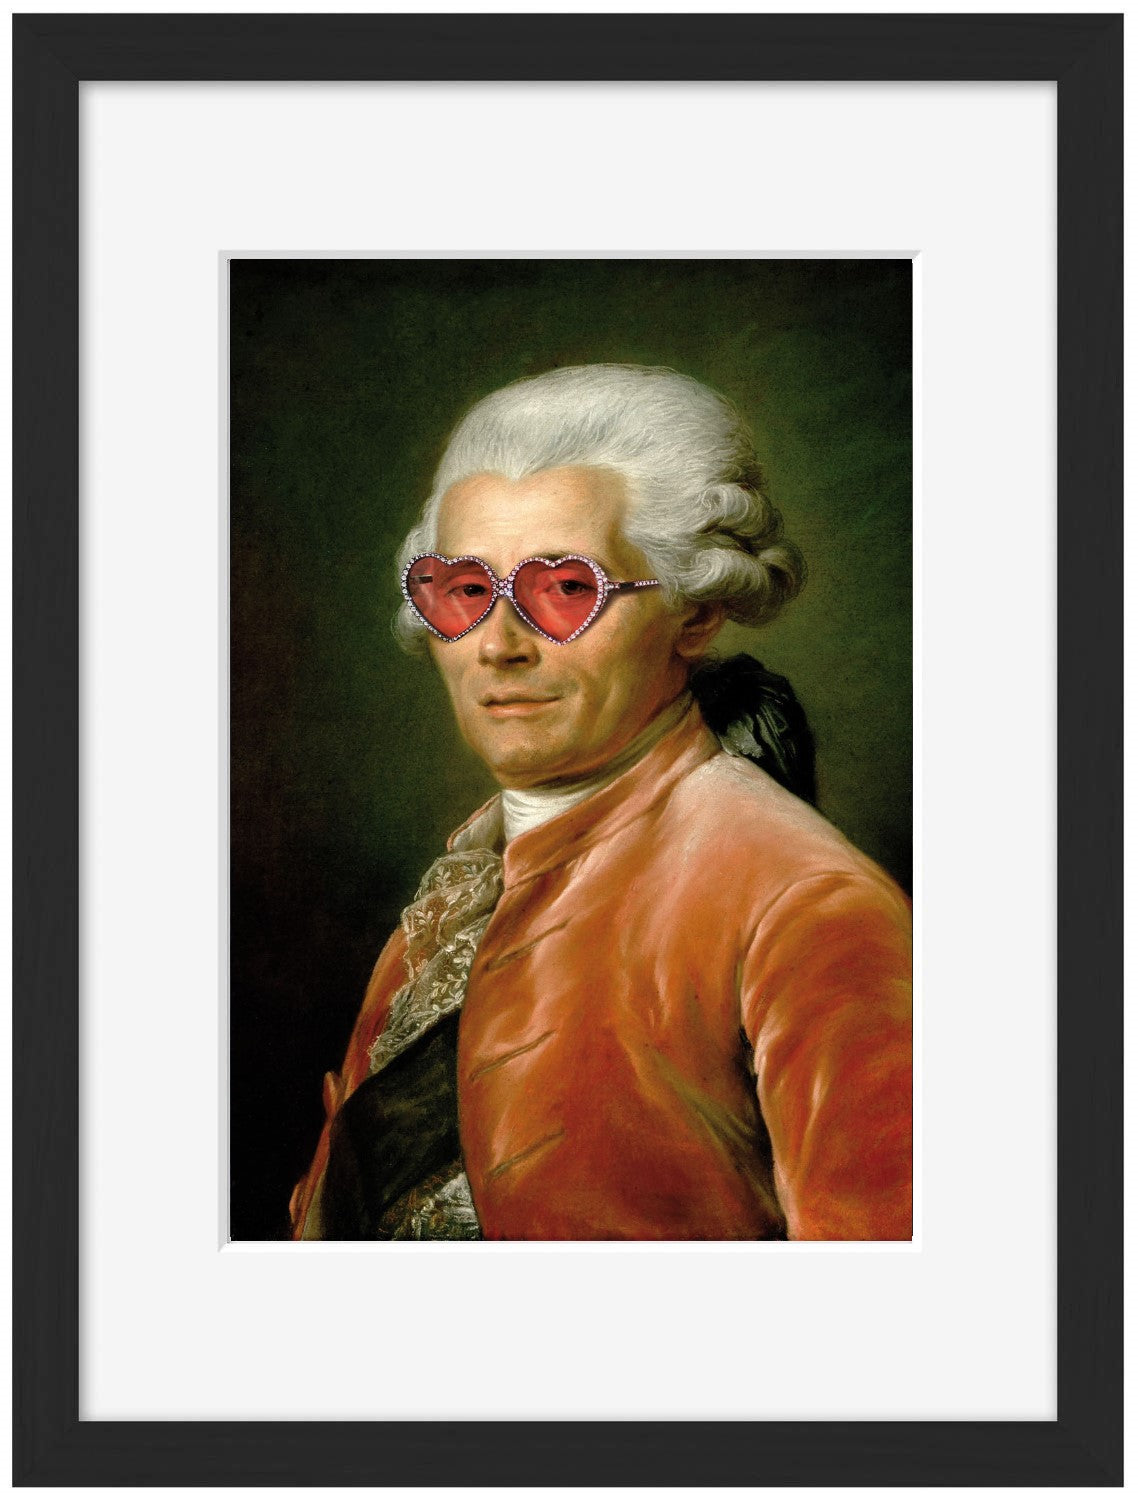 Sunglasses # 1-historical, print-Framed Print-30 x 40 cm-BLUE SHAKER